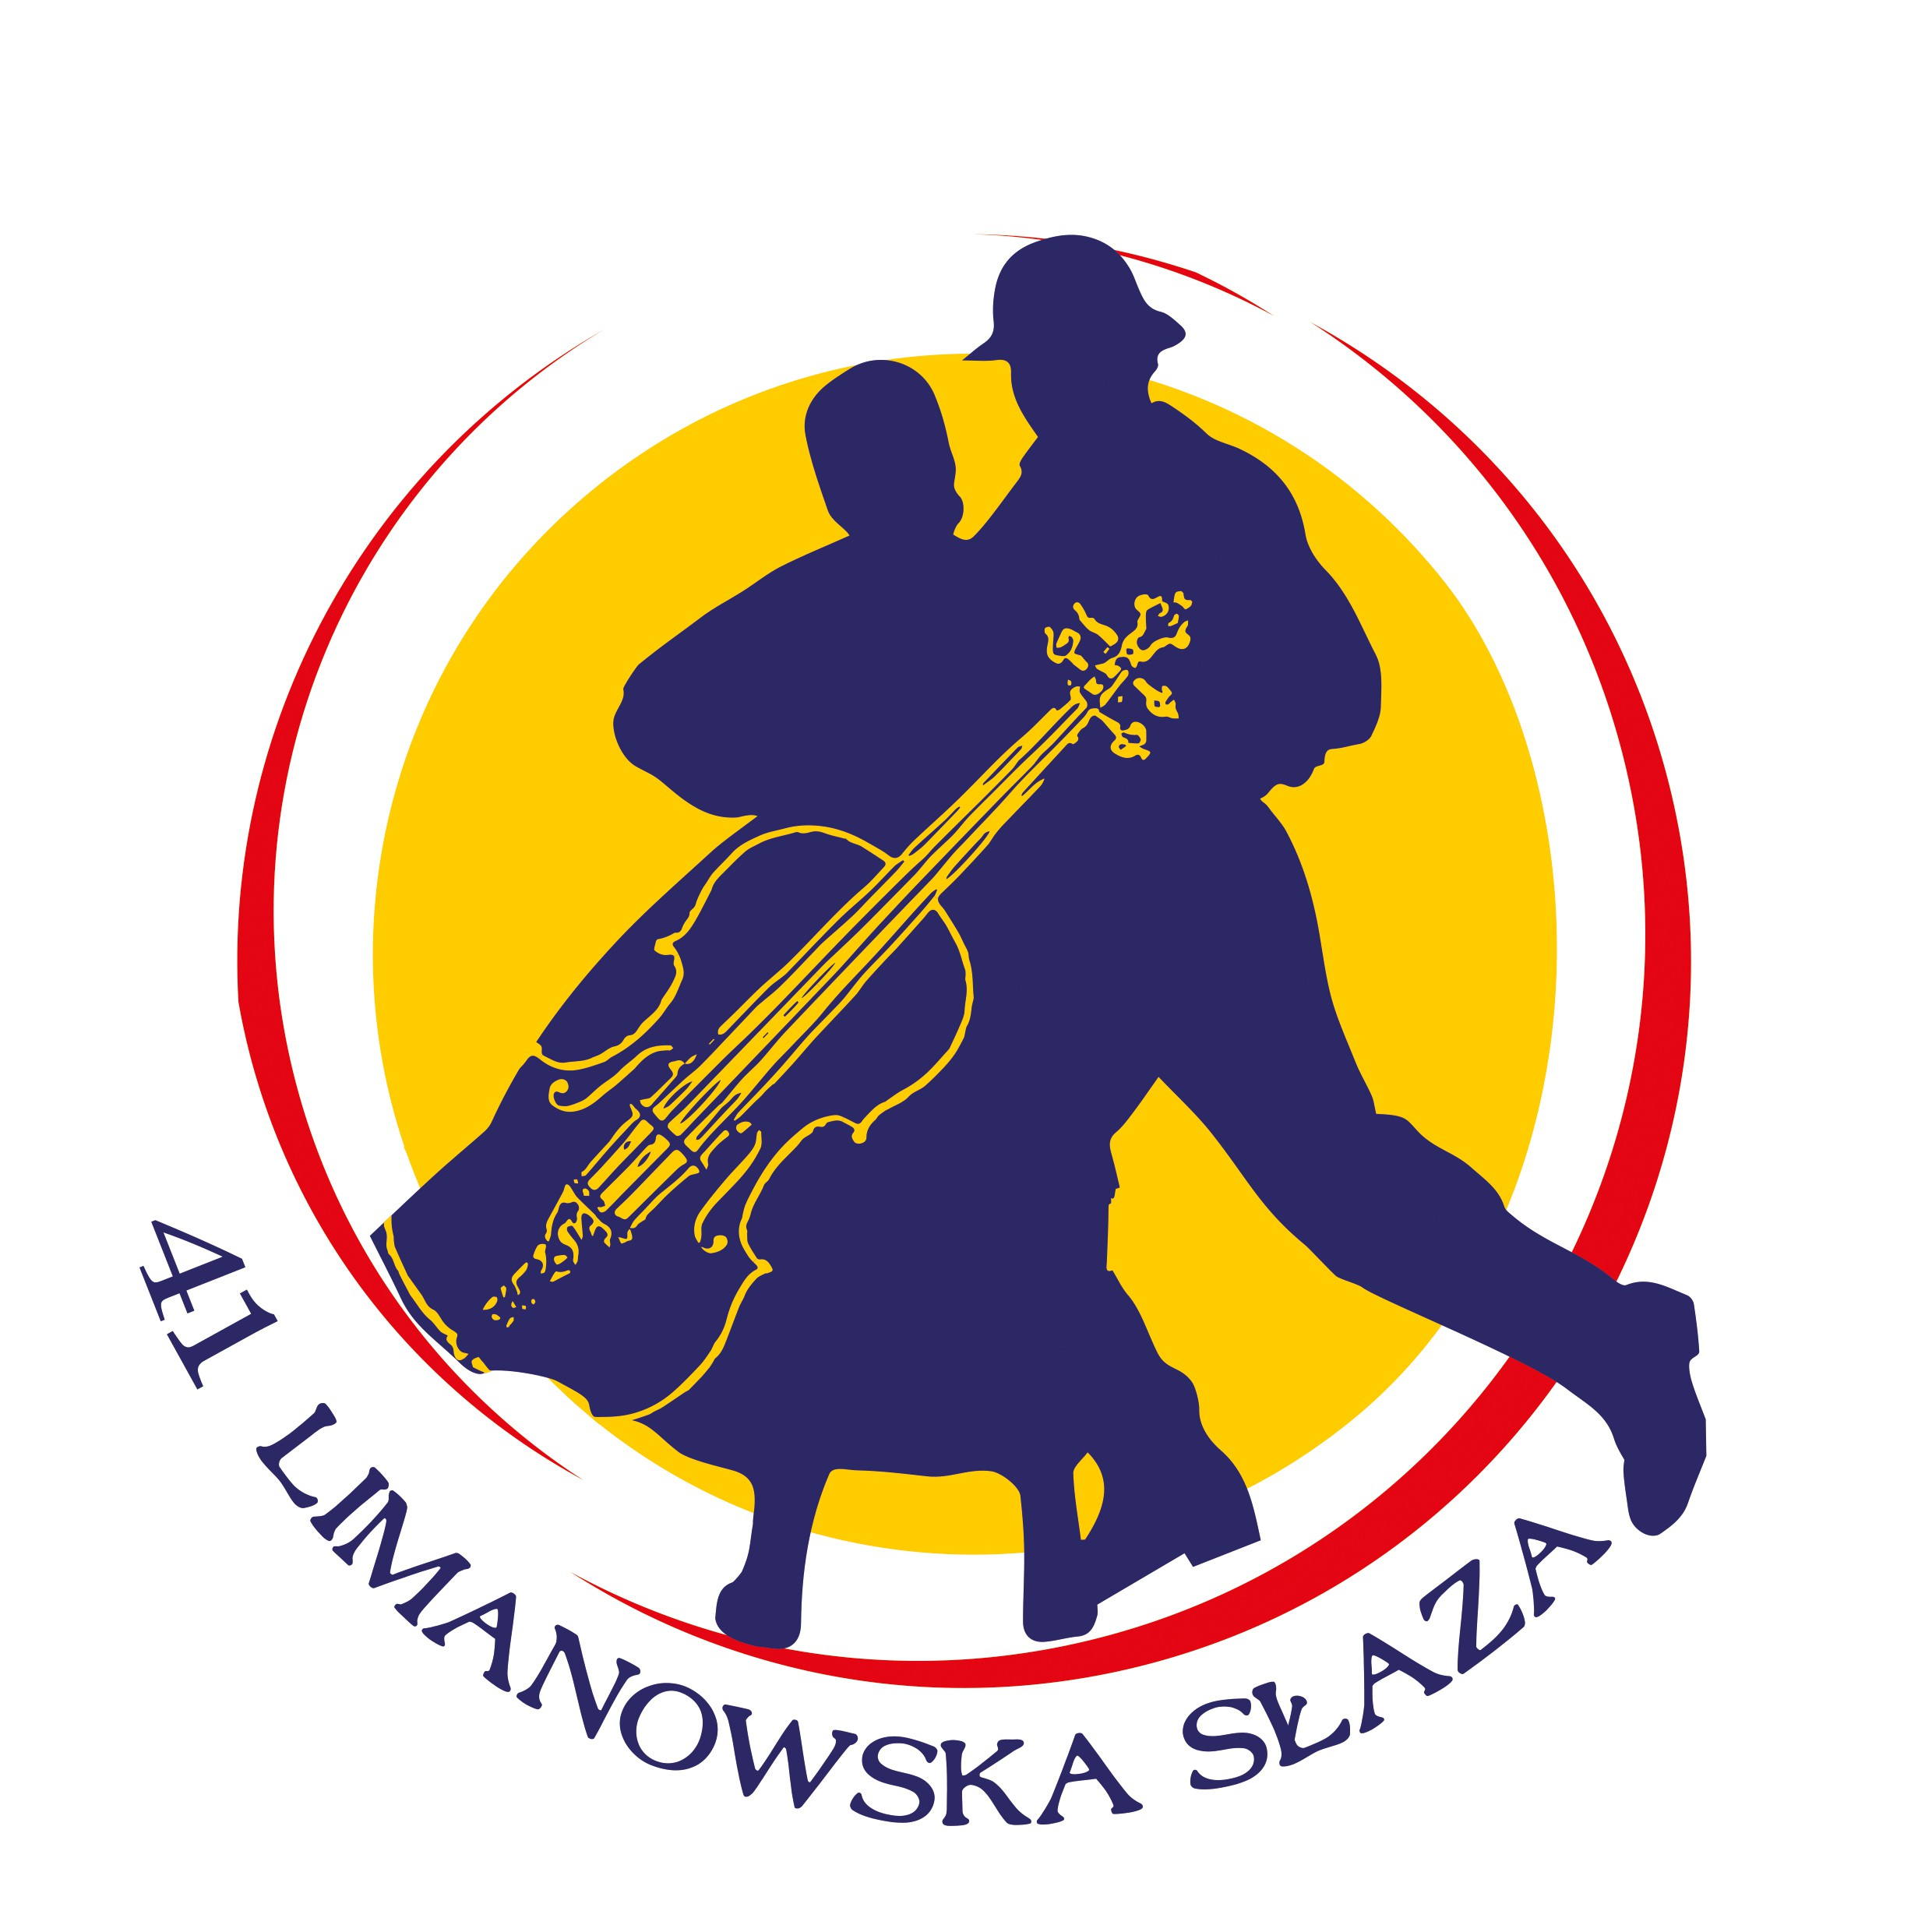 41. FESTIWAL FOLKLORYSTYCZNY LIMANOWSKA SŁAZA REGULAMIN 5-8 listopada 2015 r.